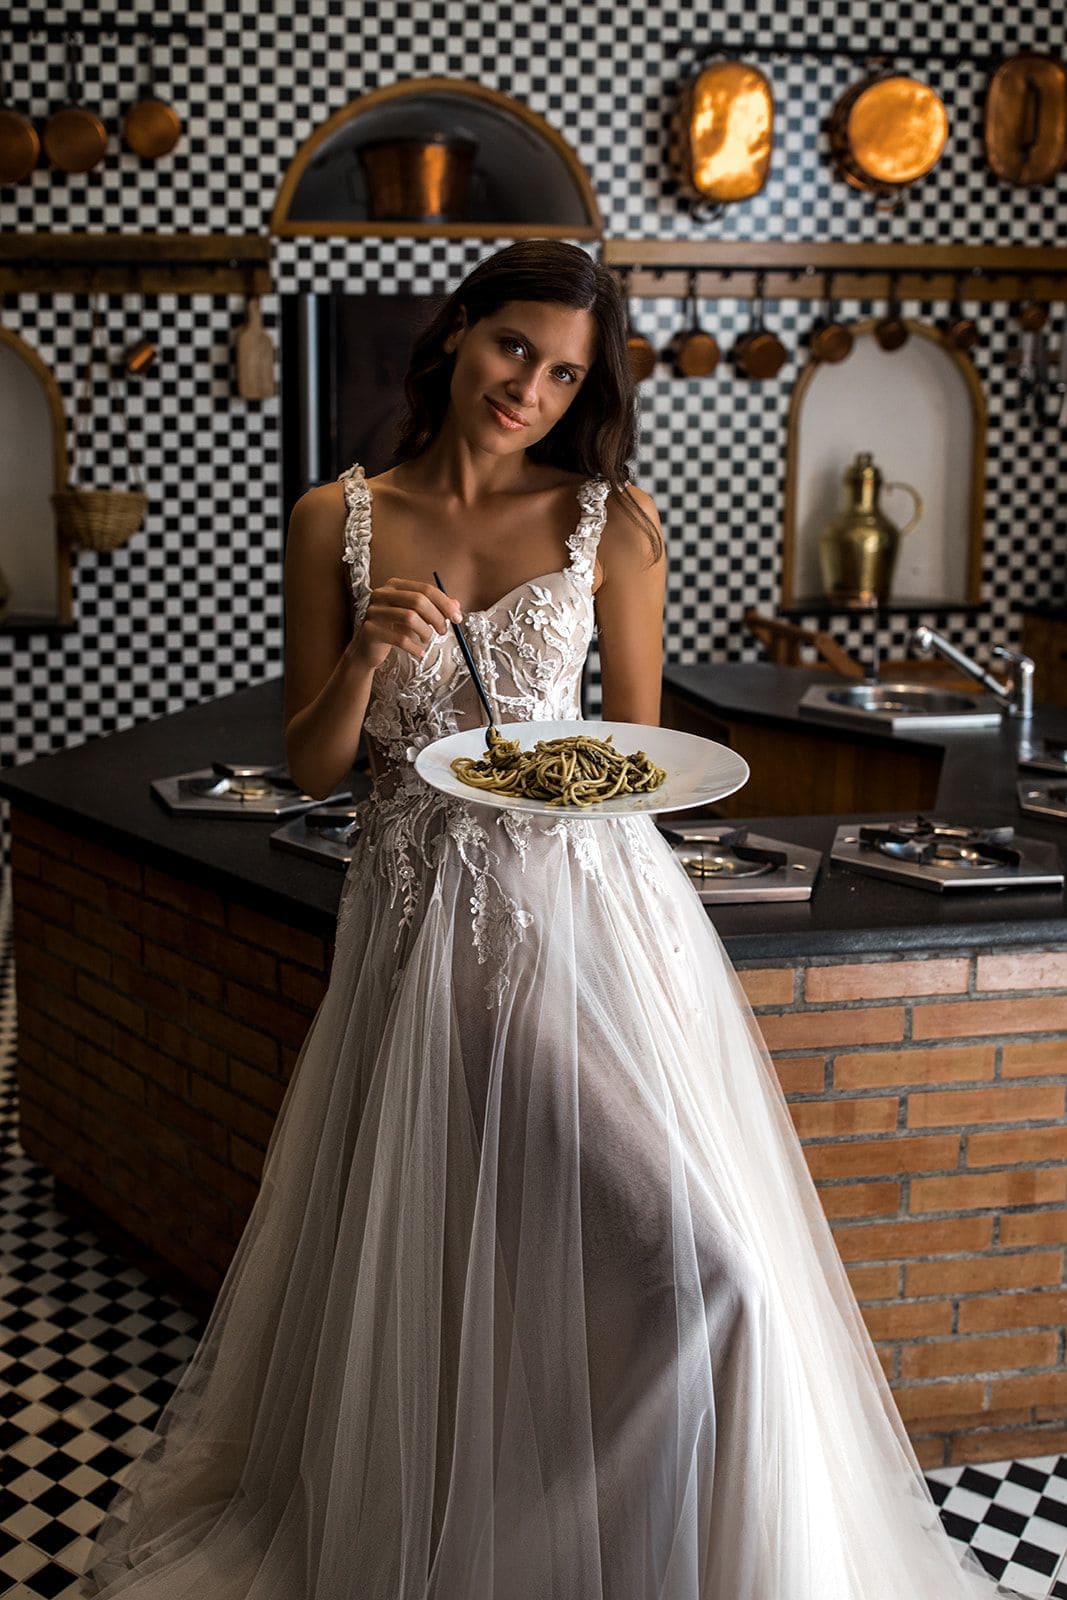 Bride in Villa Astor kitchen plate of pasta